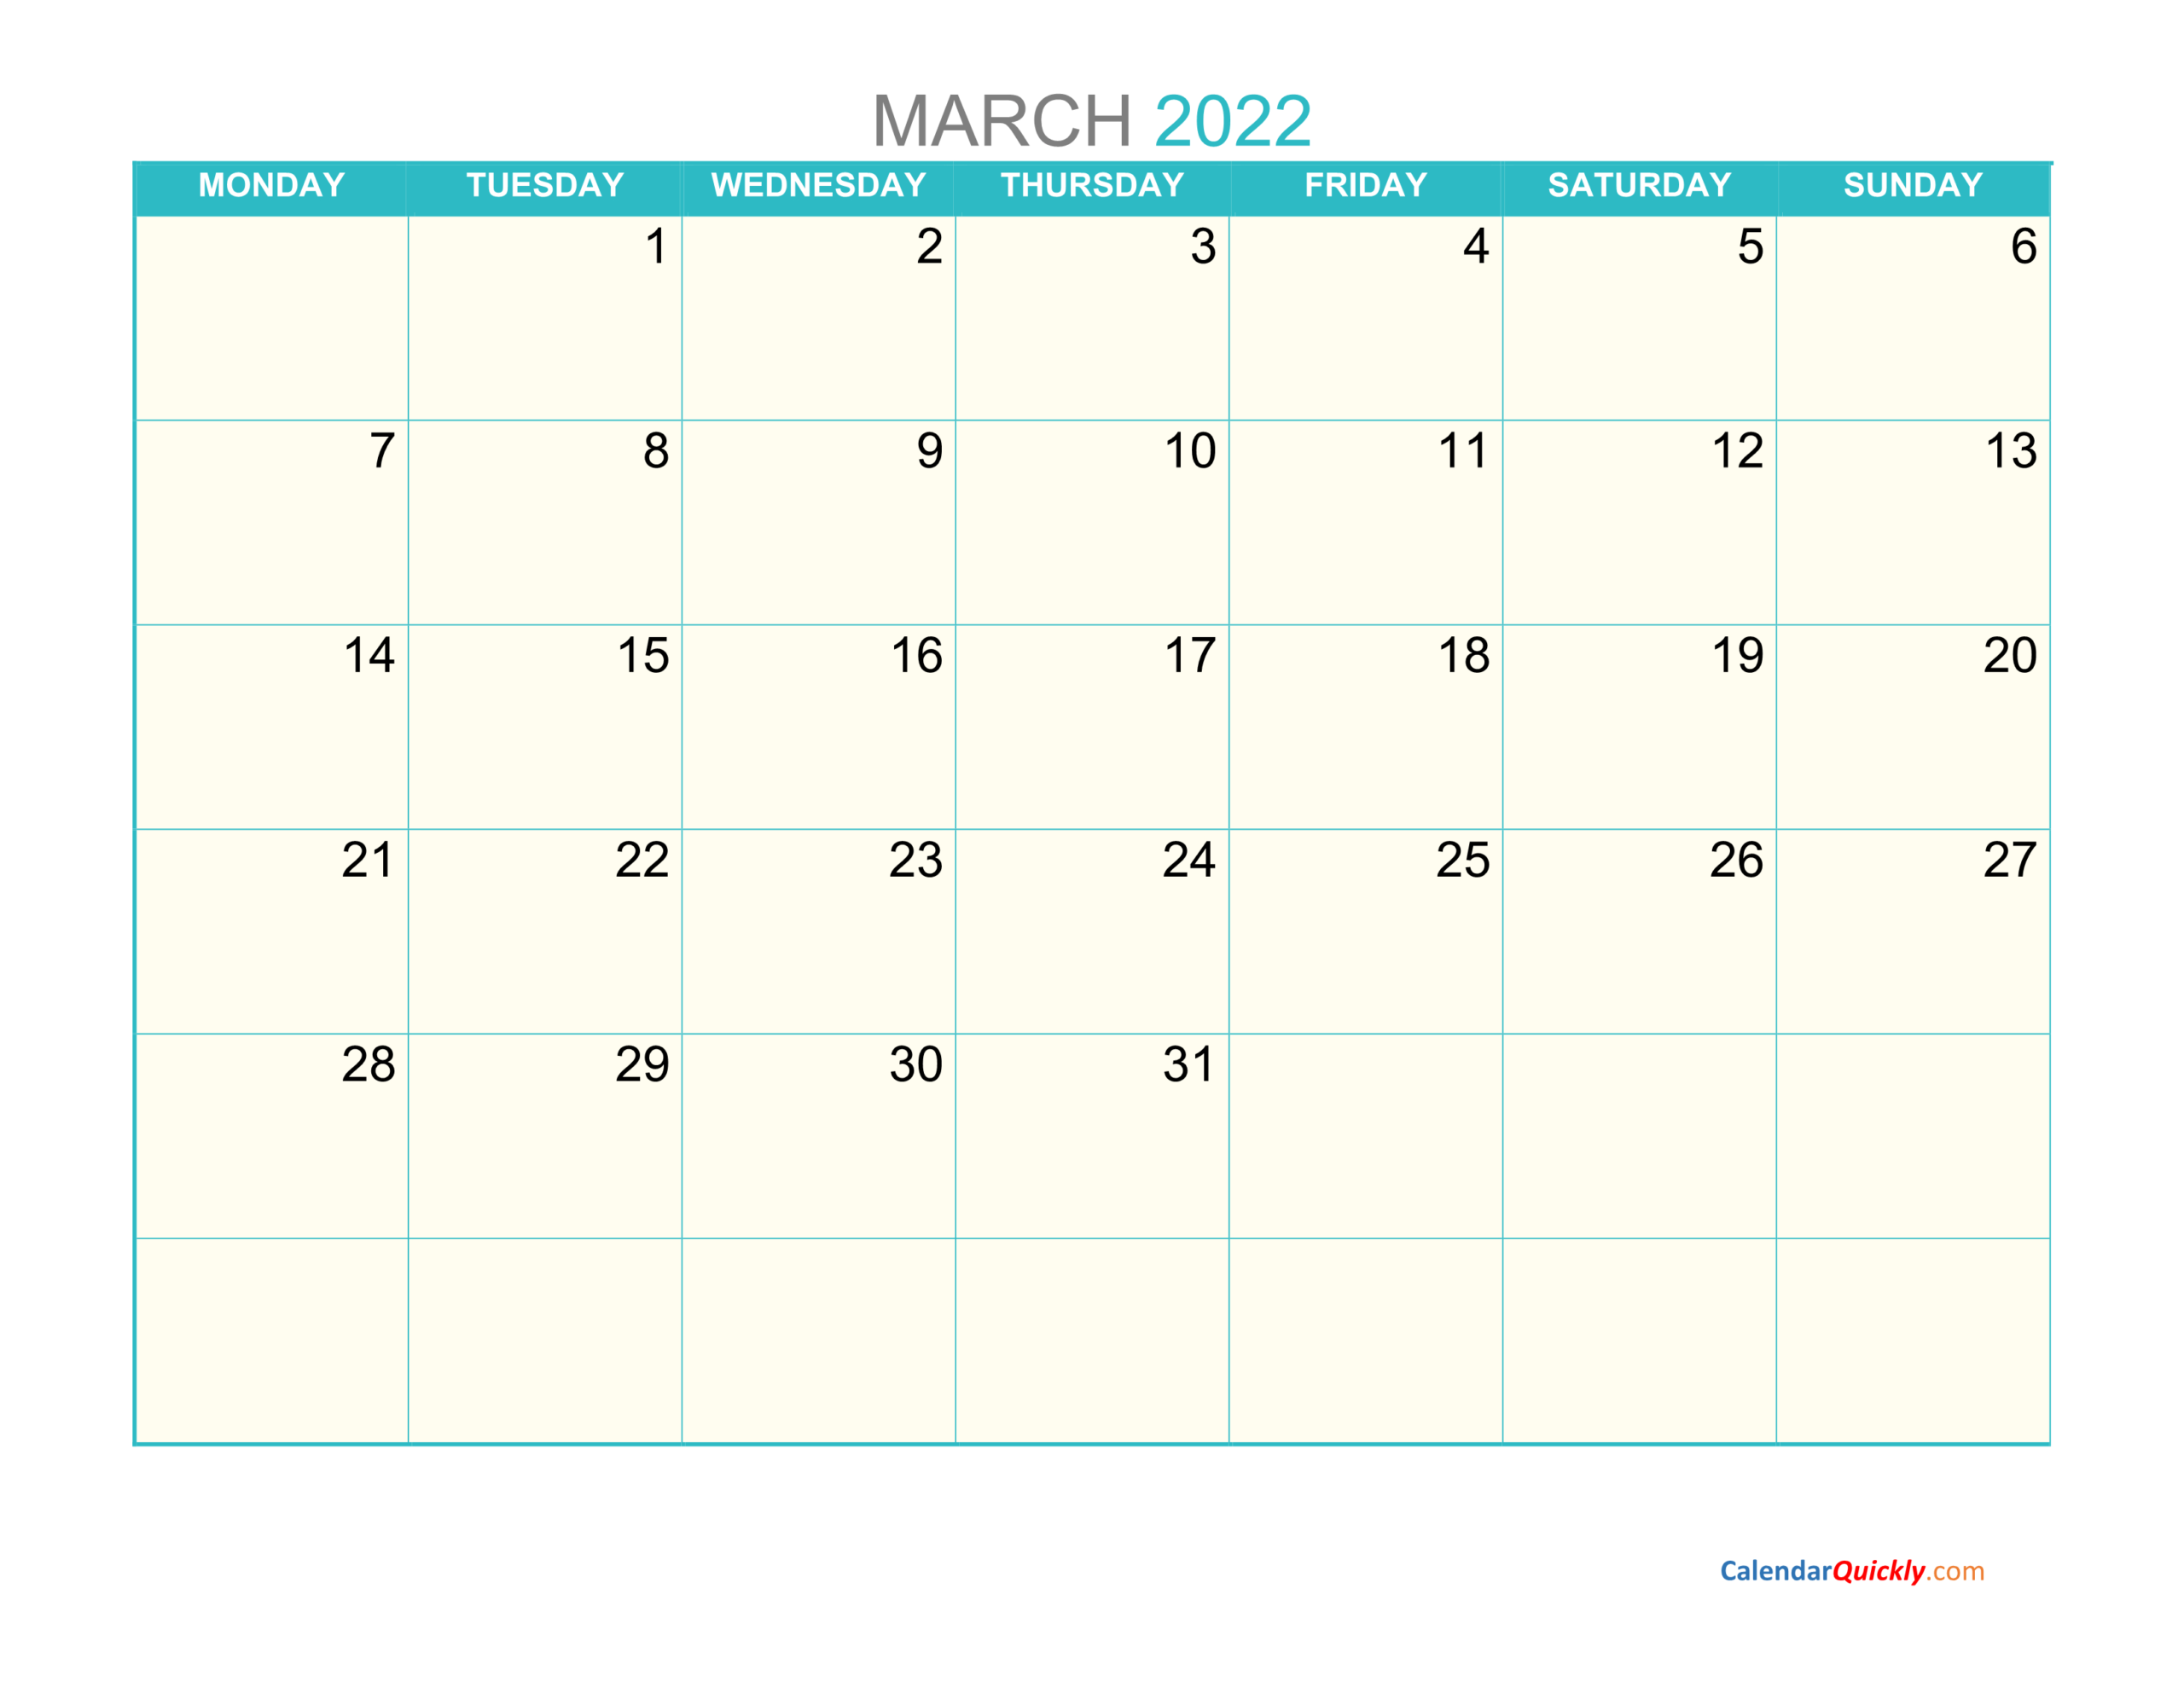 March Monday 2022 Calendar Printable | Calendar Quickly  April 2022 To March 2022 Calendar